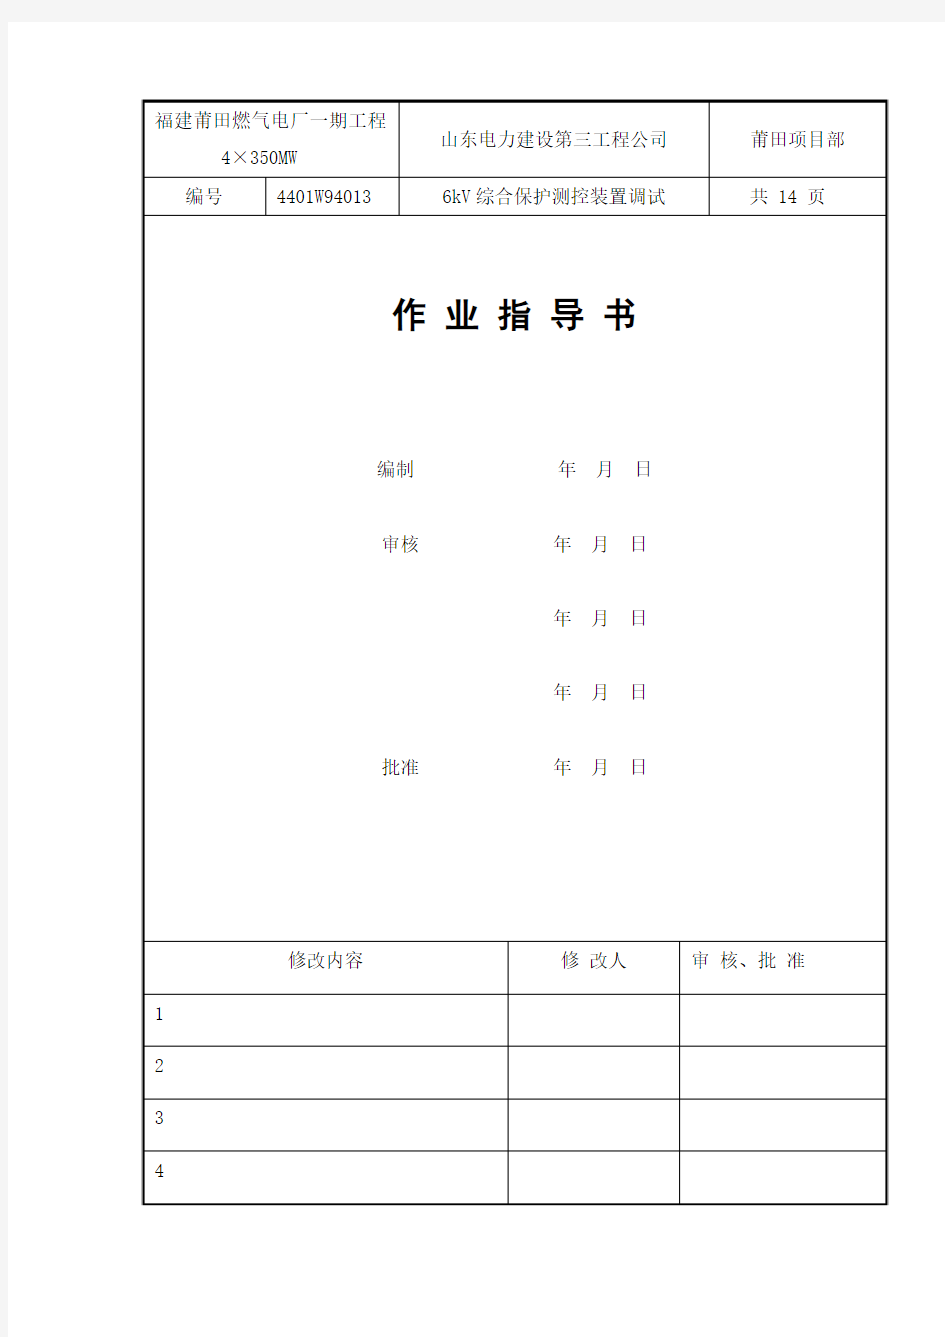 6kV综合保护调试作业指导书(修改完)